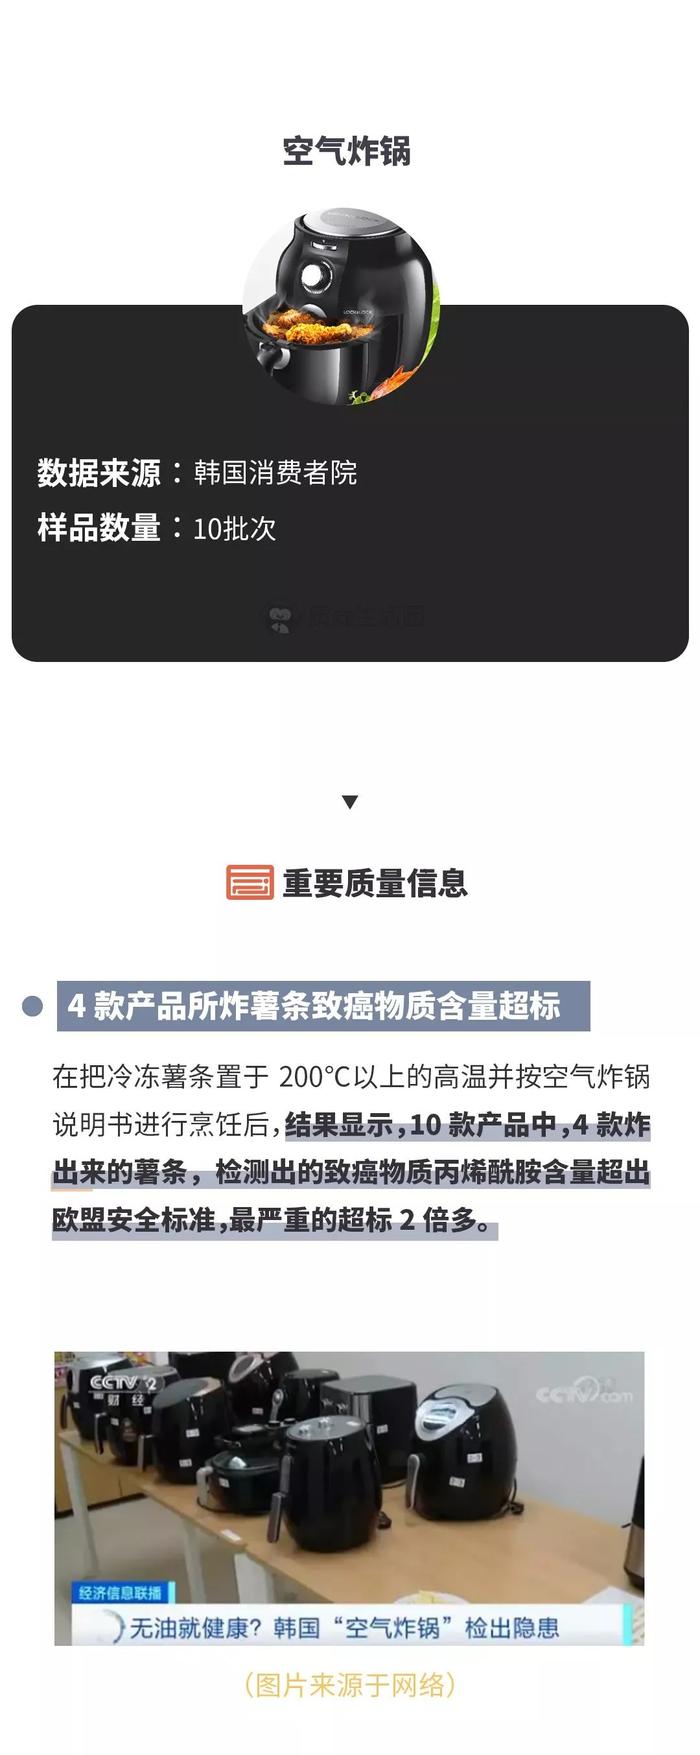 12月消费指南丨韩国空气炸锅检出隐患，H&M、ZARA太阳镜不合格